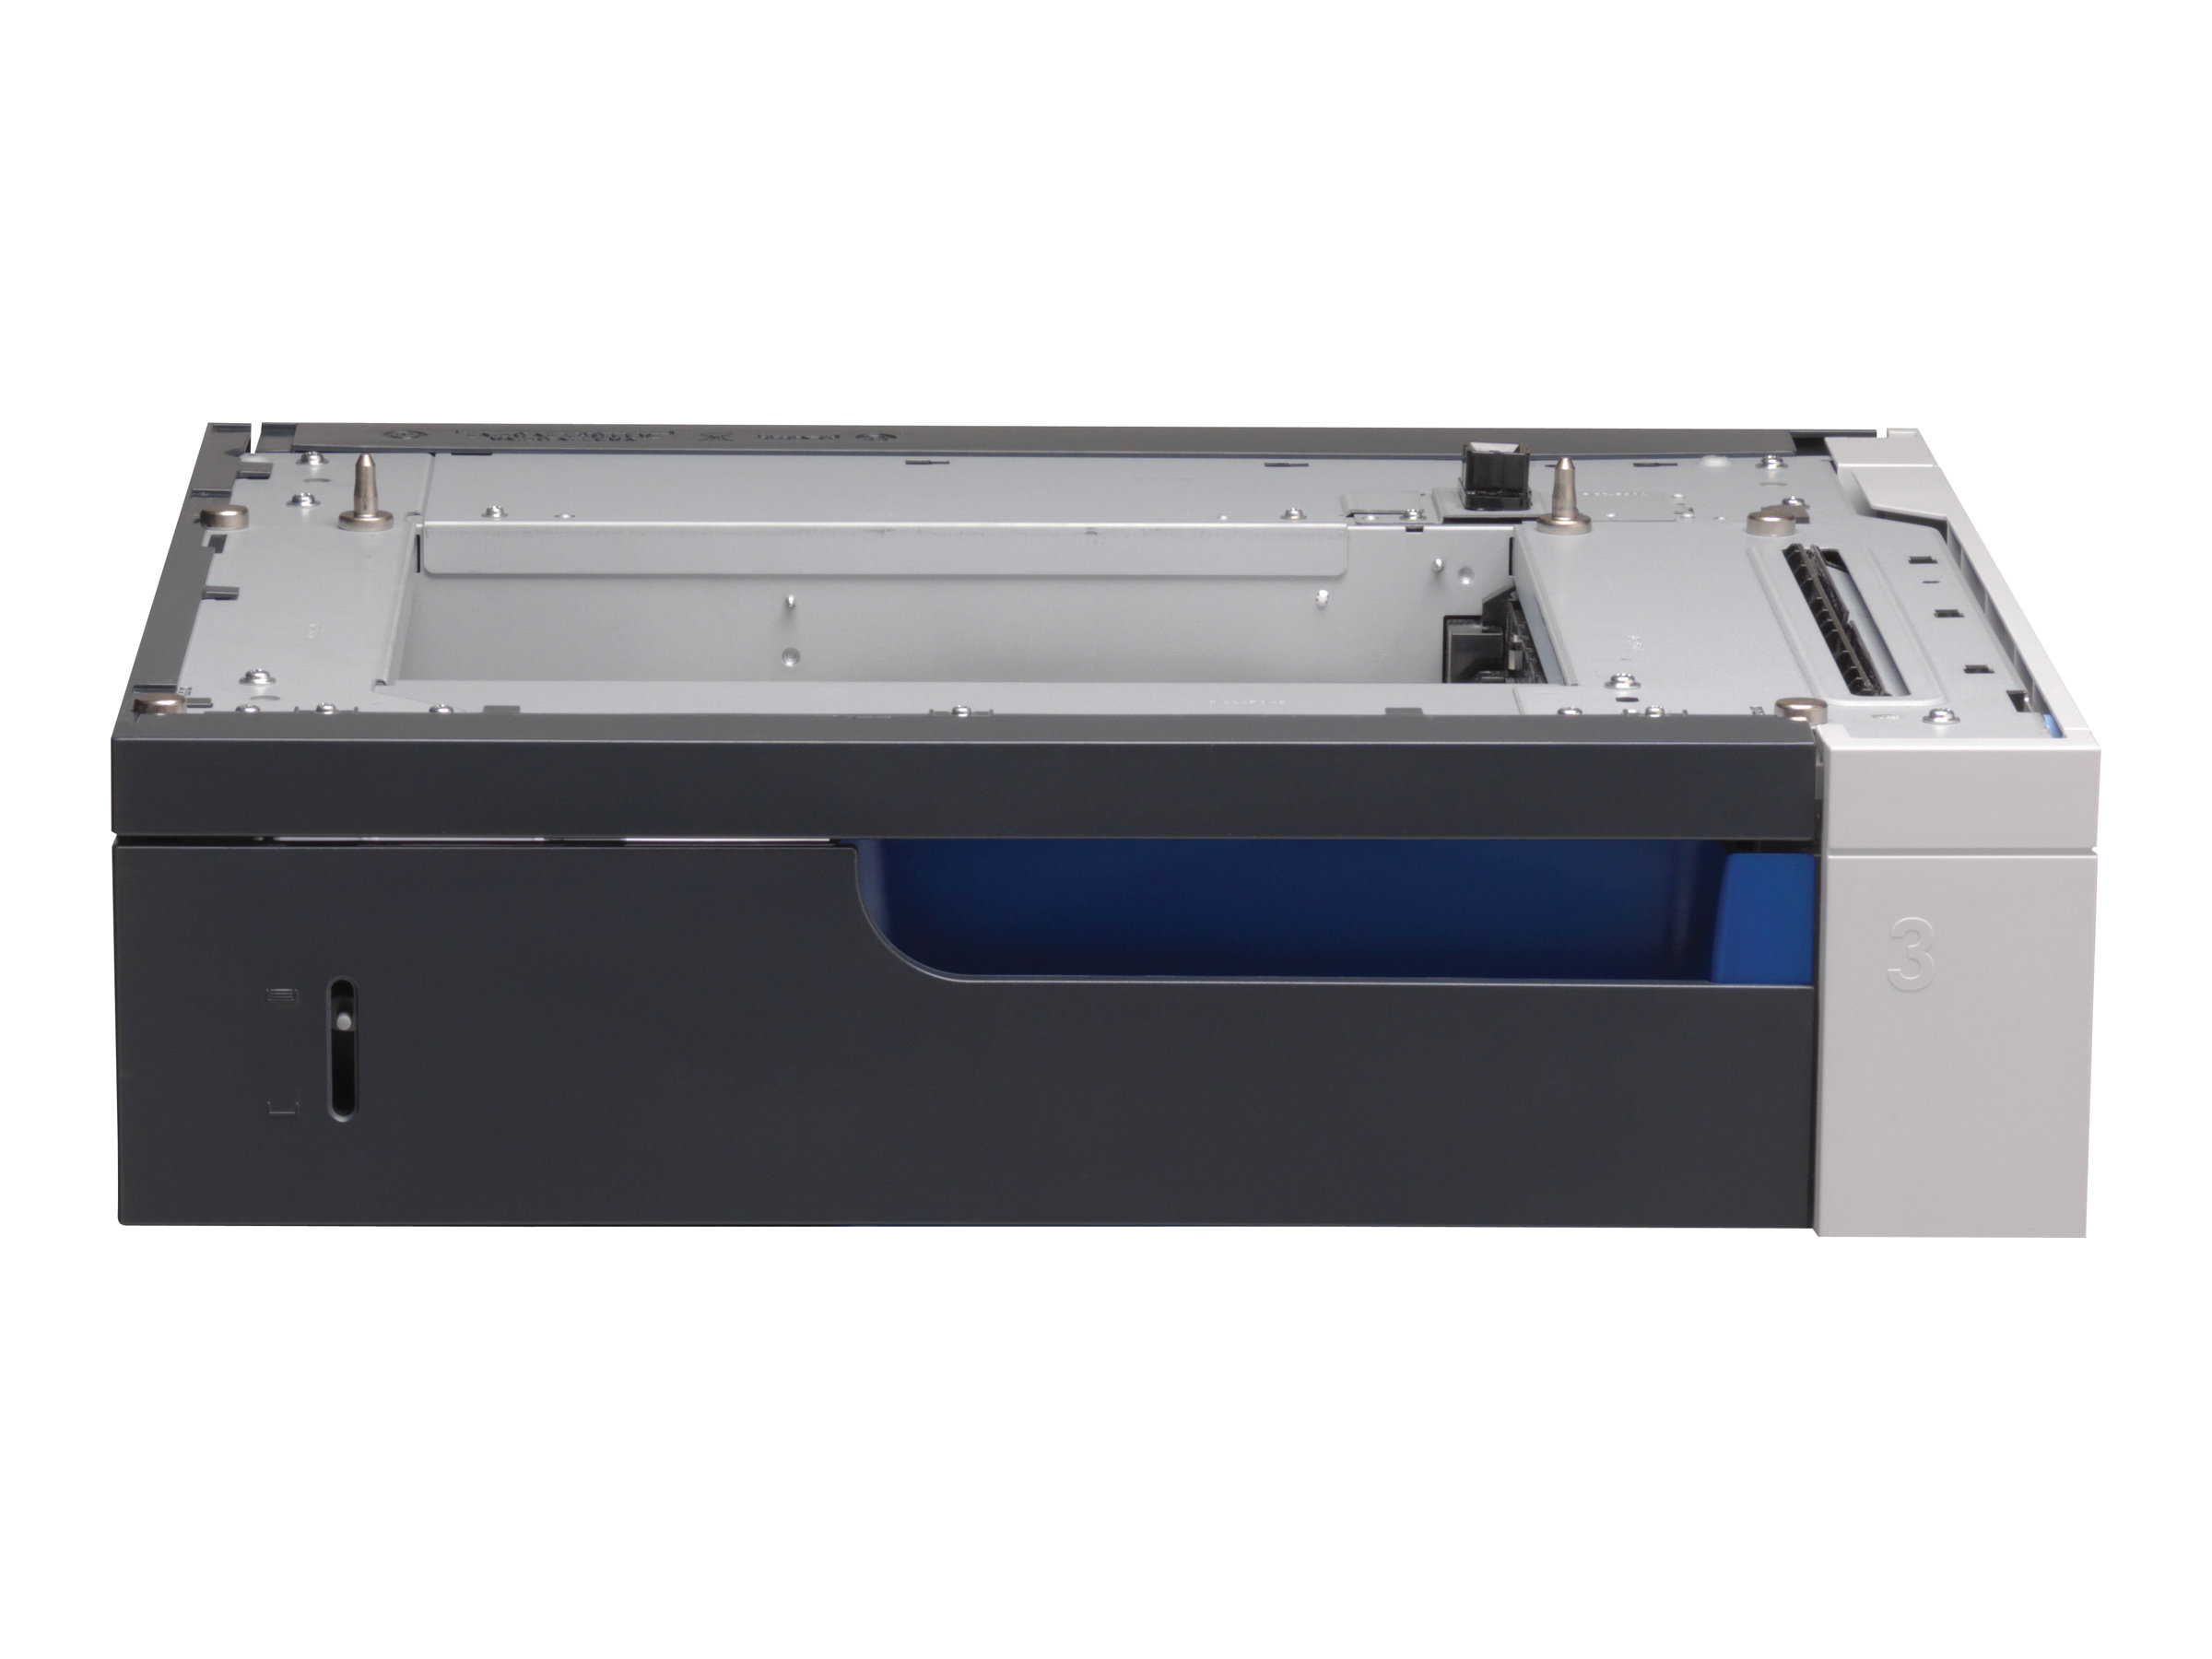 Medienschacht - 500 Blätter in 1 Schublade für A3, A4 und A5 - für HP Color LaserJet Professional CP5225 Drucker, CP5225dn Drucker und CP5225n Drucker